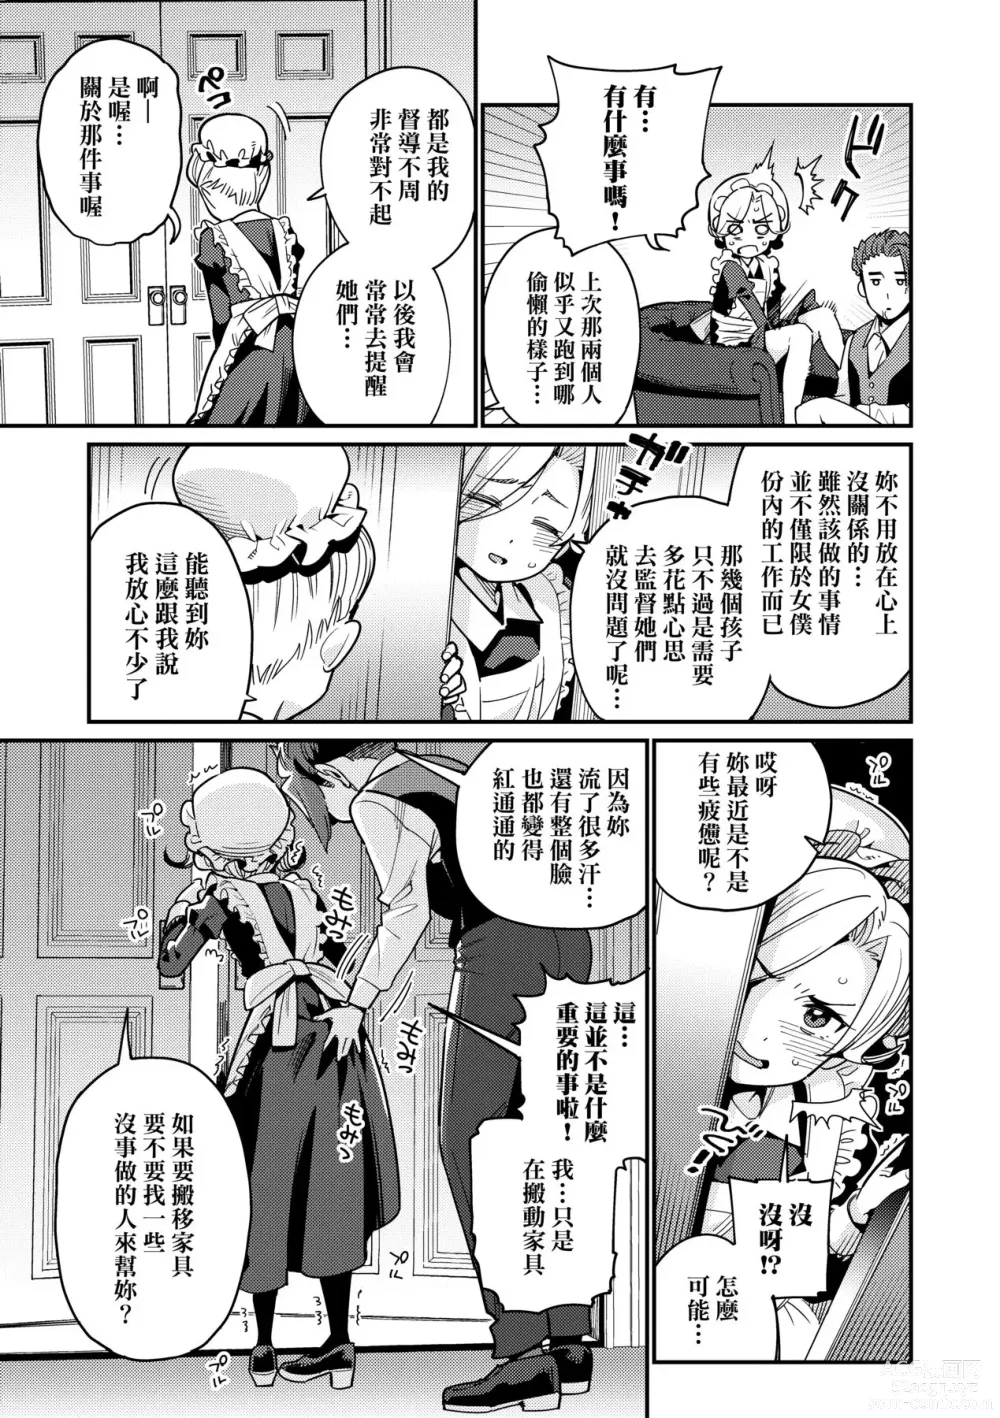 Page 14 of manga Itoshiki Wagaya (decensored)